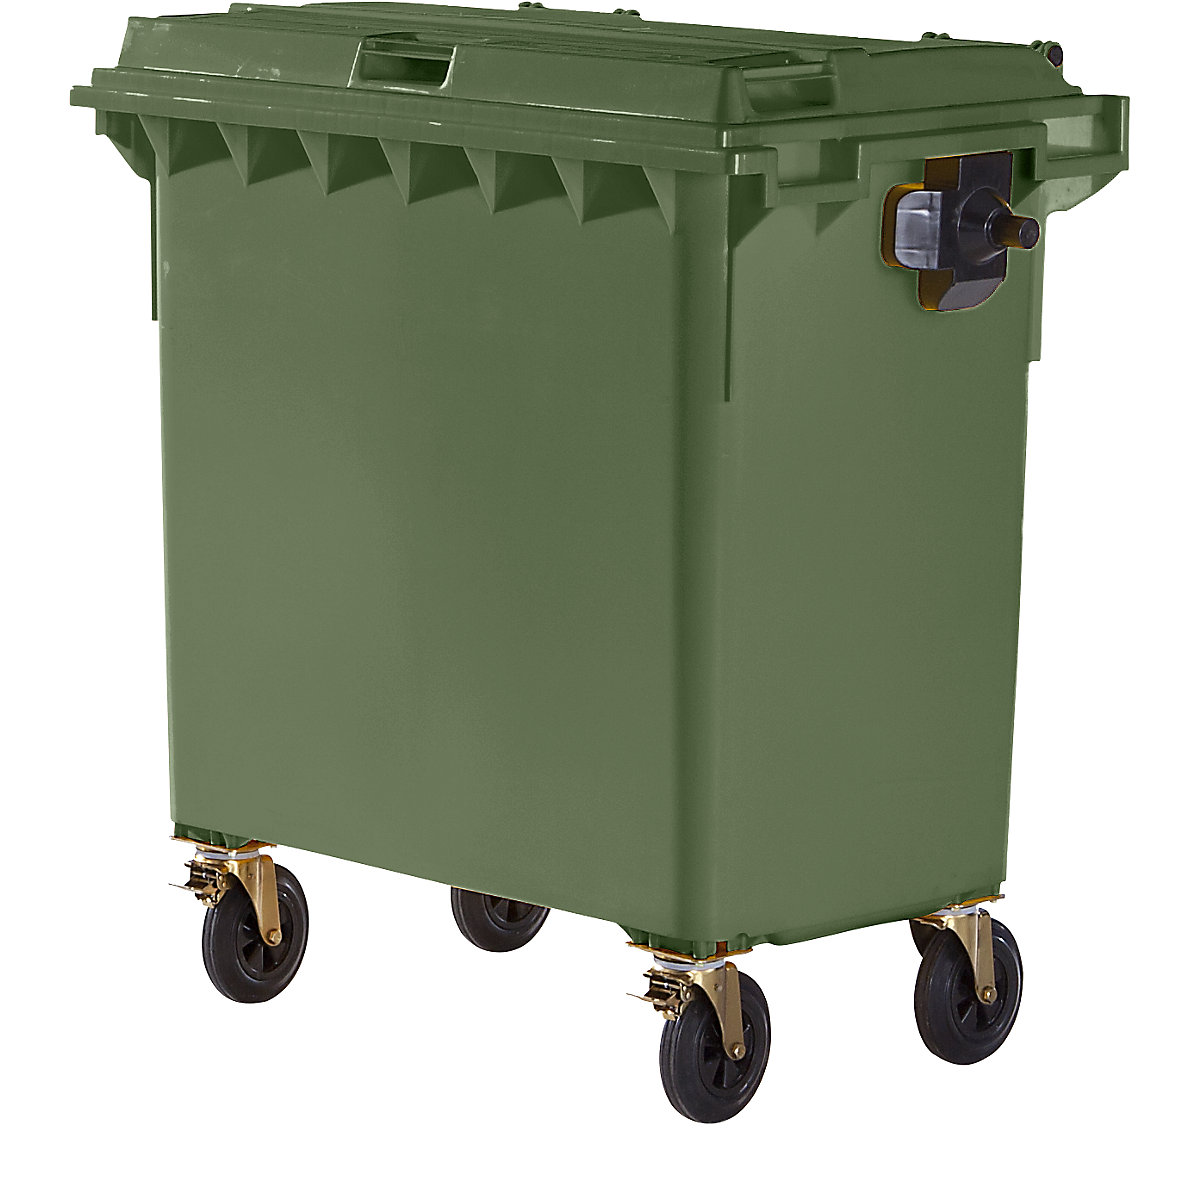 Conteneur à ordures en plastique conforme DIN EN 840, capacité 770 l, l x h x p 1360 x 1330 x 770 mm, vert